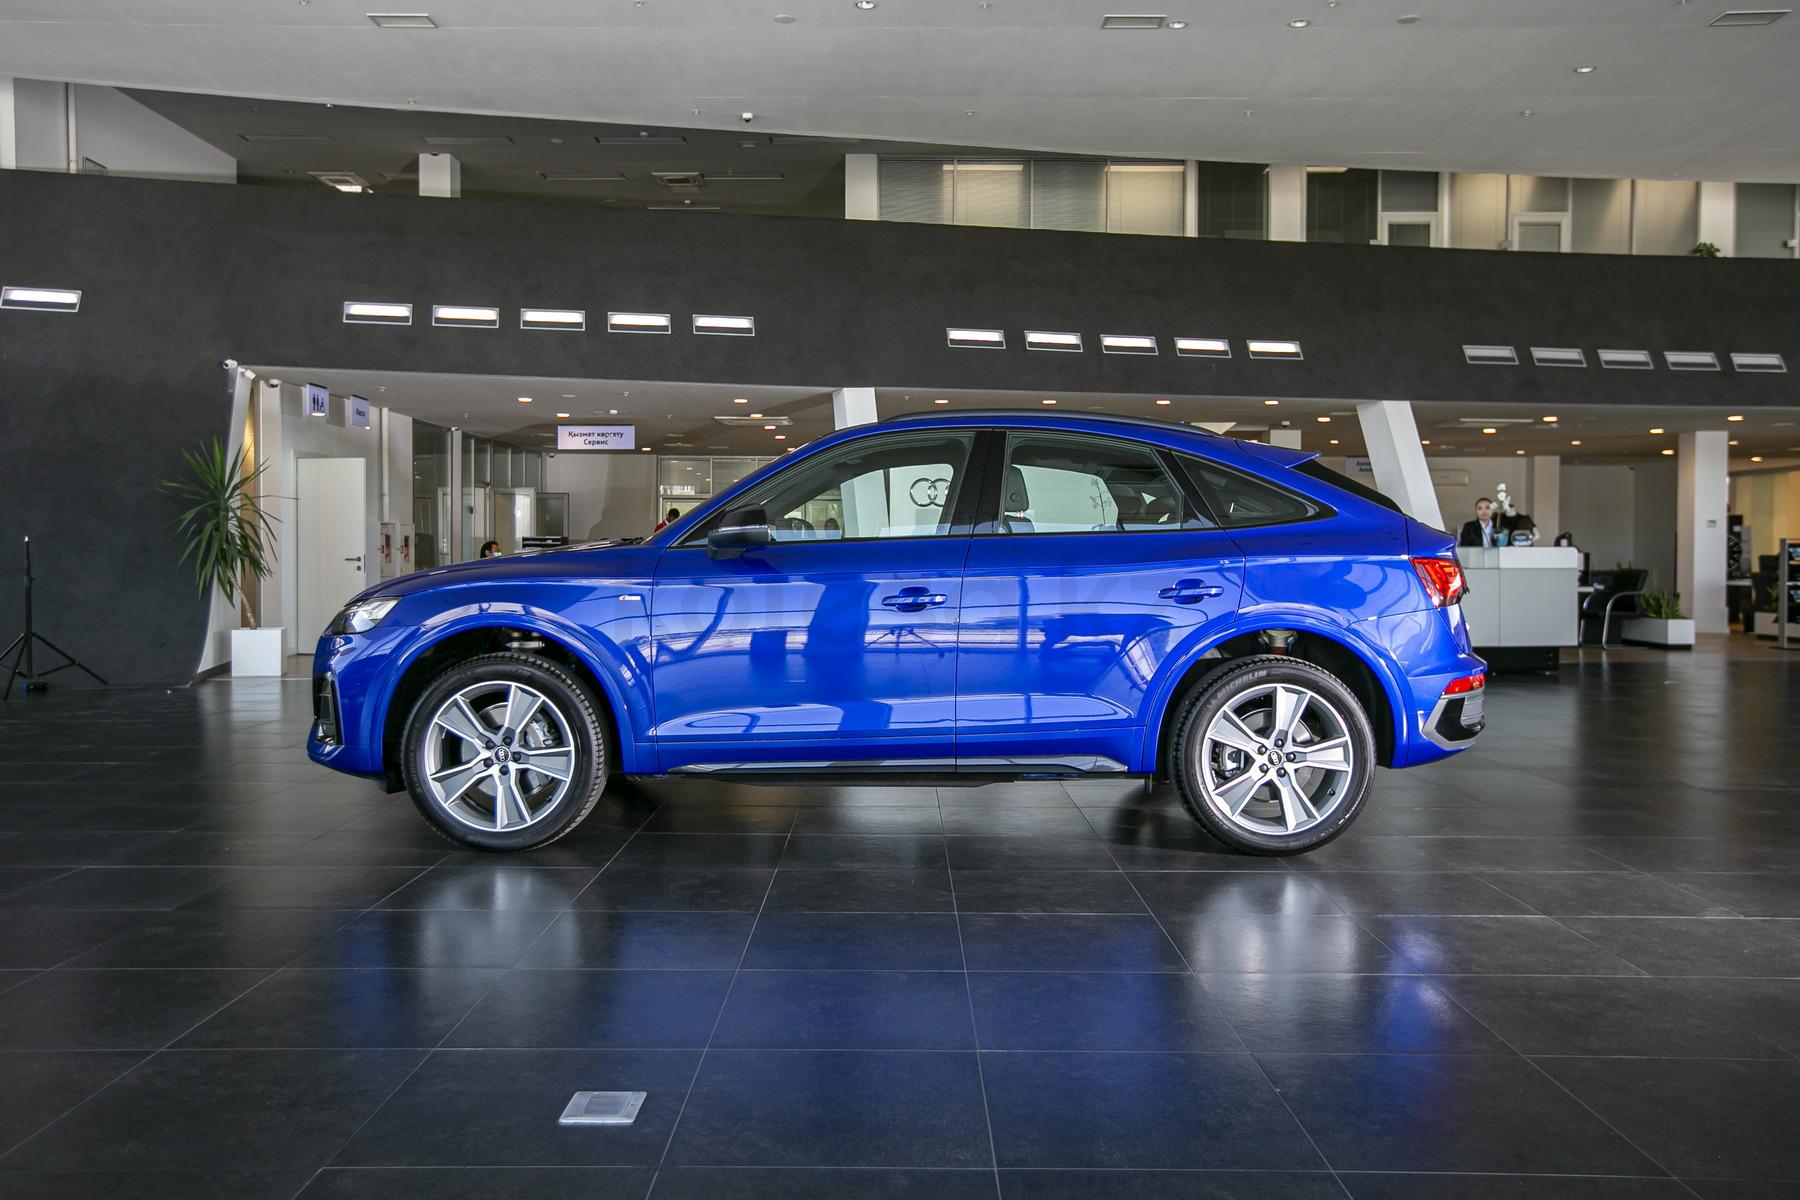 Audi Q5 Sportback SUV 2020 - н.в. года от 46 575 990 тенге